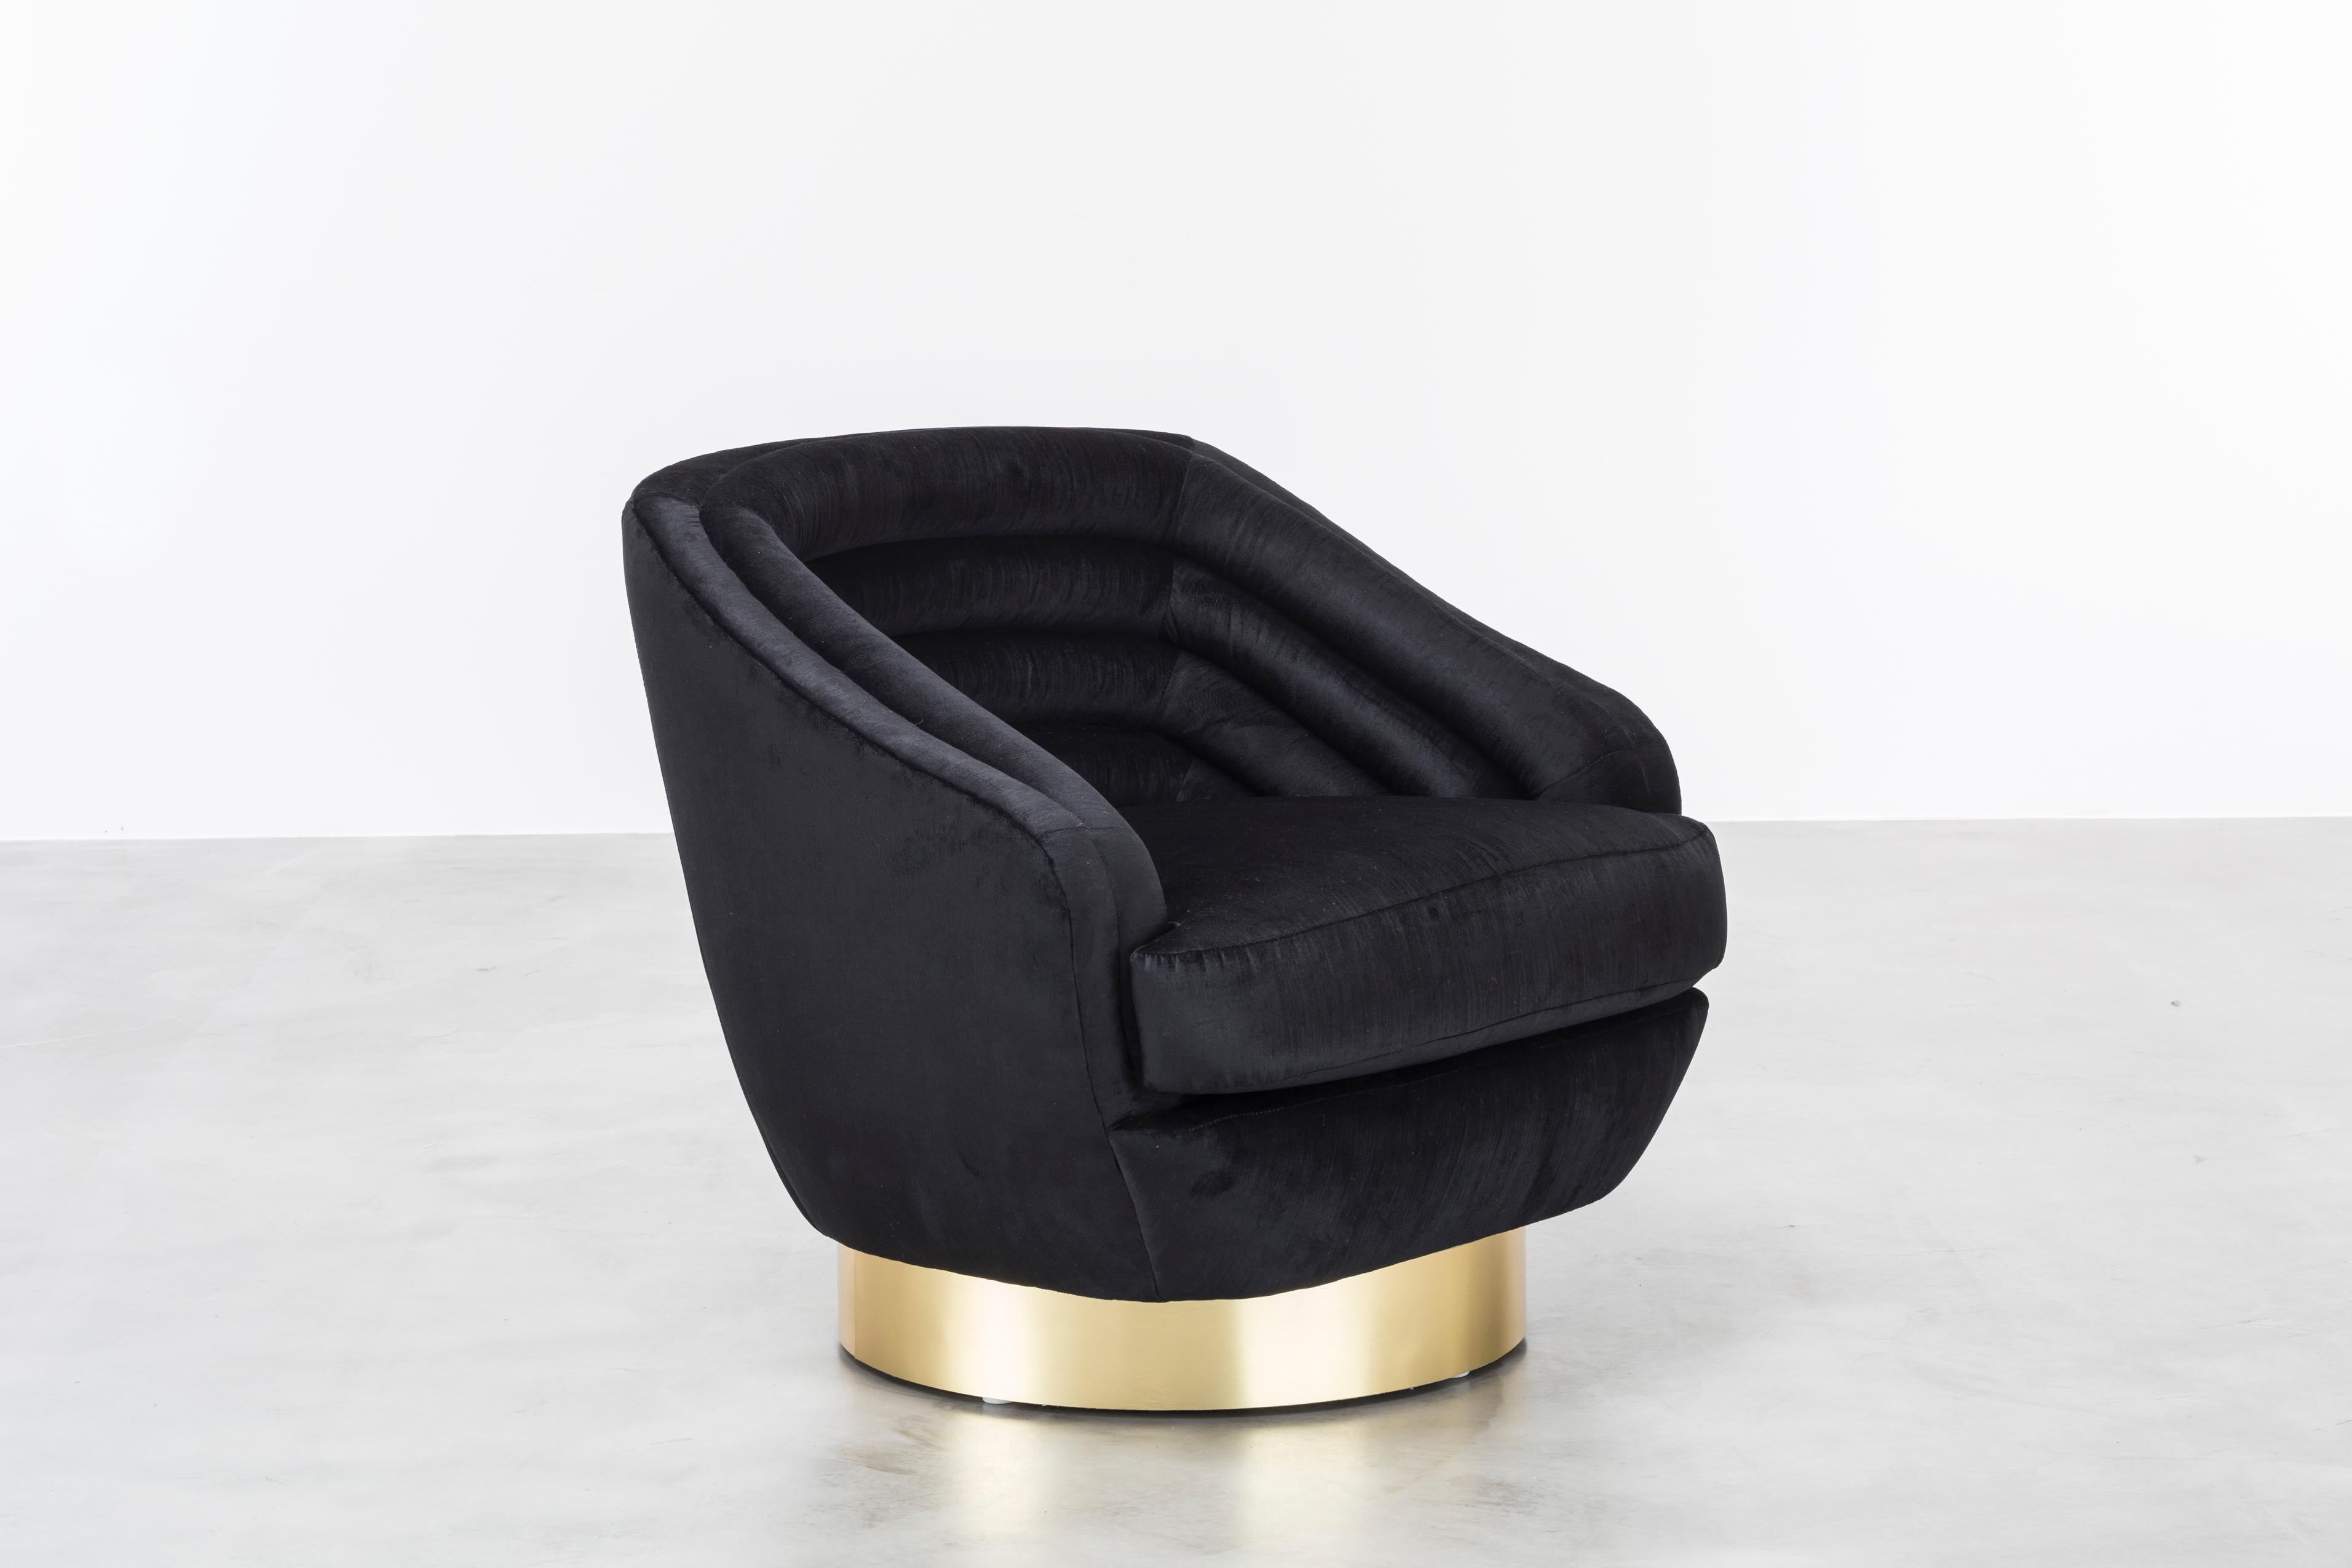 RAOUL SWIVEL CHAIR – moderner schwarzer Samtstuhl auf drehbarem Sockel aus Messing

Der Stuhl Raoul ist ein atemberaubendes Möbelstück, das von der Haute Couture von Jean Paul Gaultier inspiriert ist. Die horizontalen Samtrillen verleihen diesem